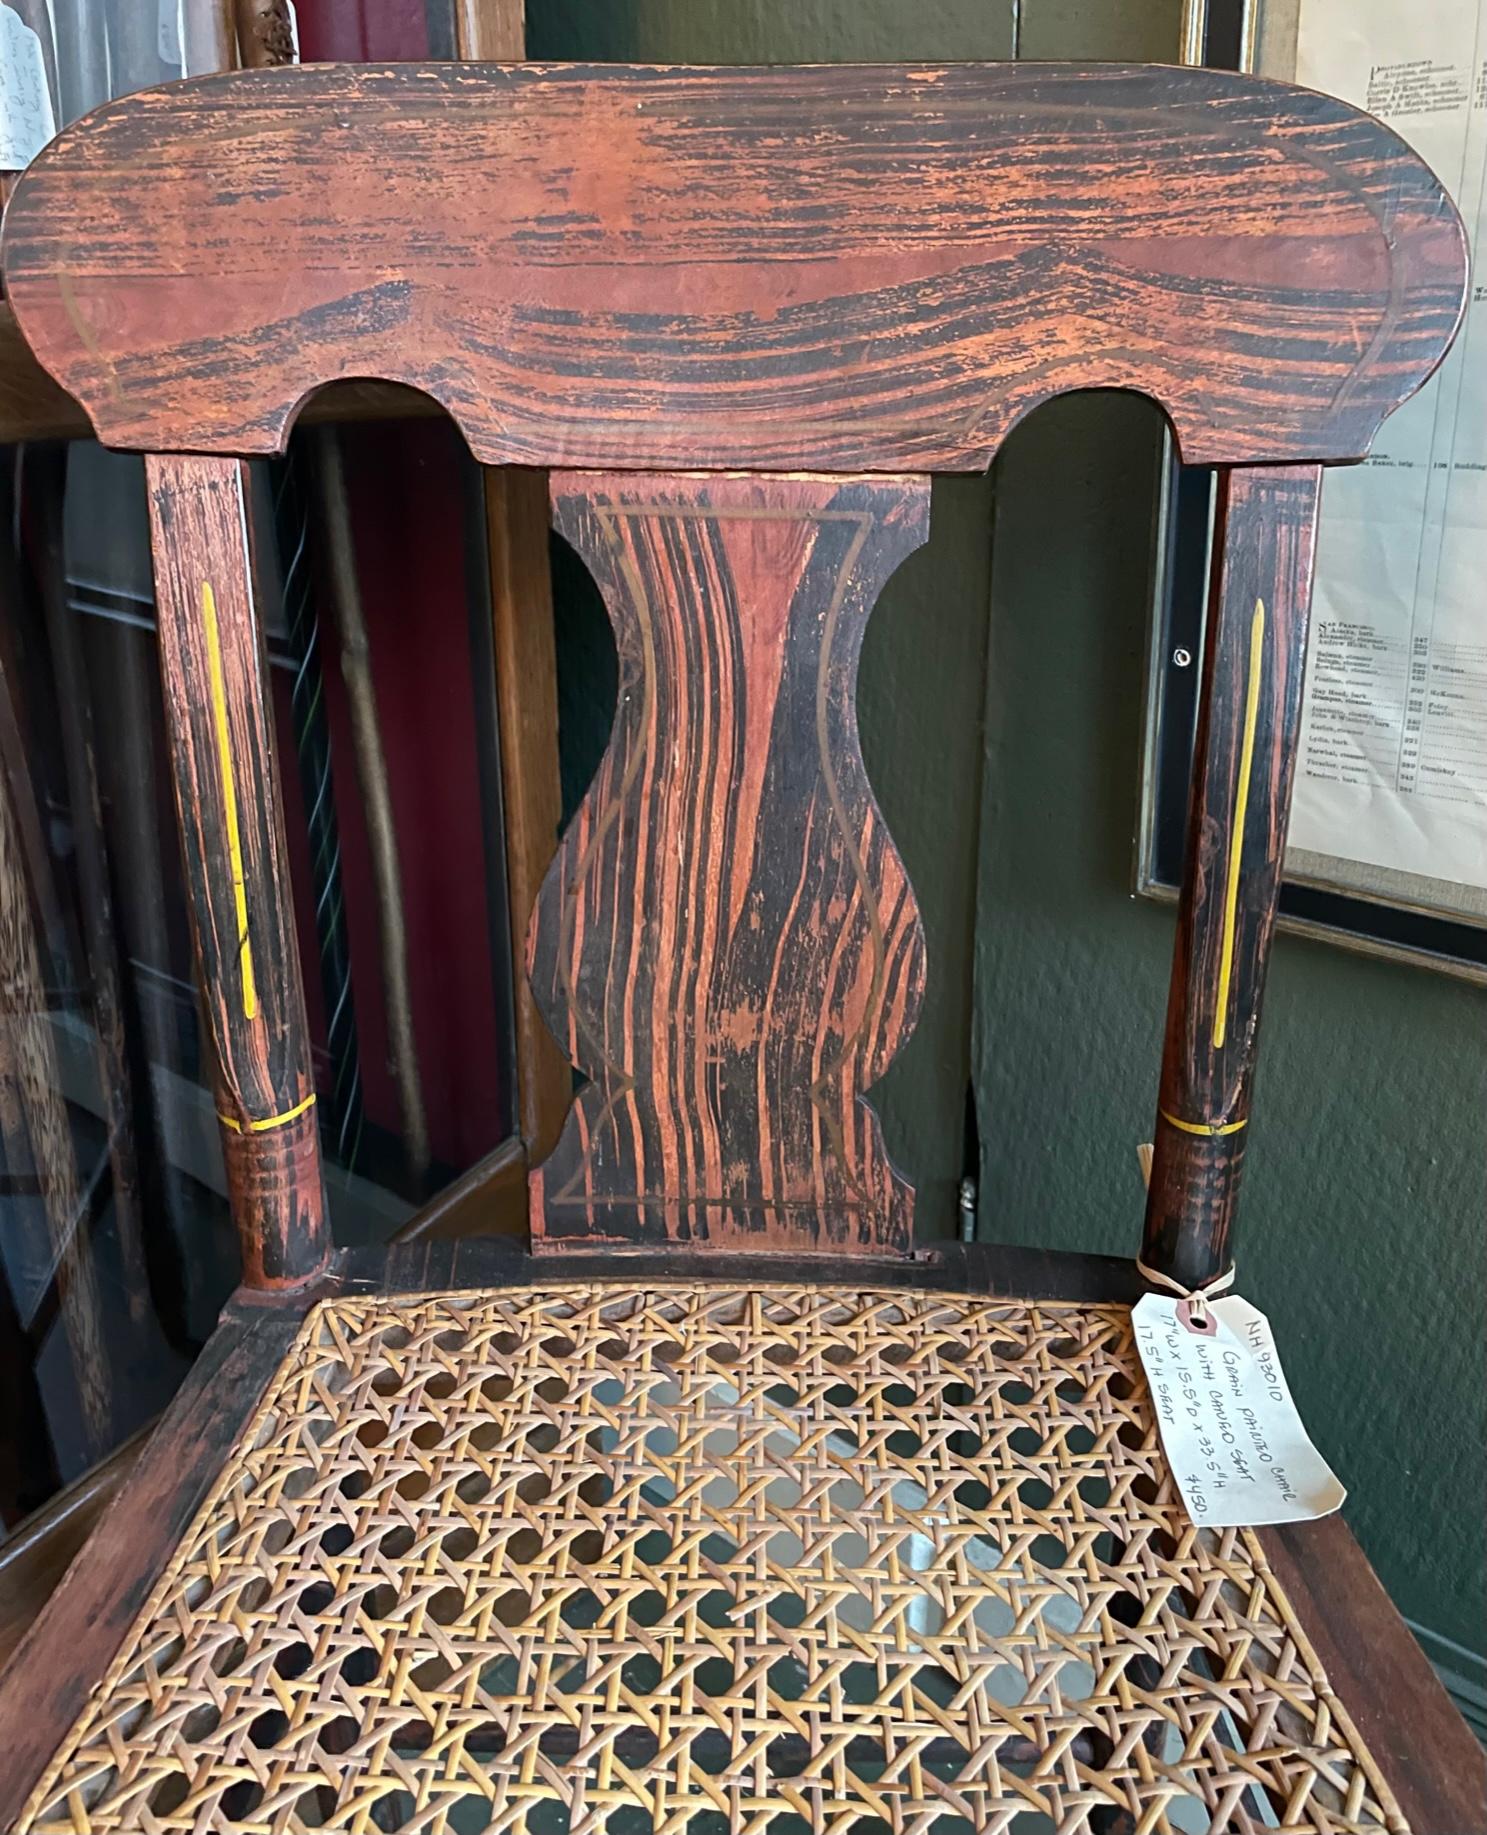 chaise d'appoint du 19ème siècle avec peinture à grain gras sur toute la surface, châssis tourné, le tout avec des reflets dorés intermittents, assise en canne.